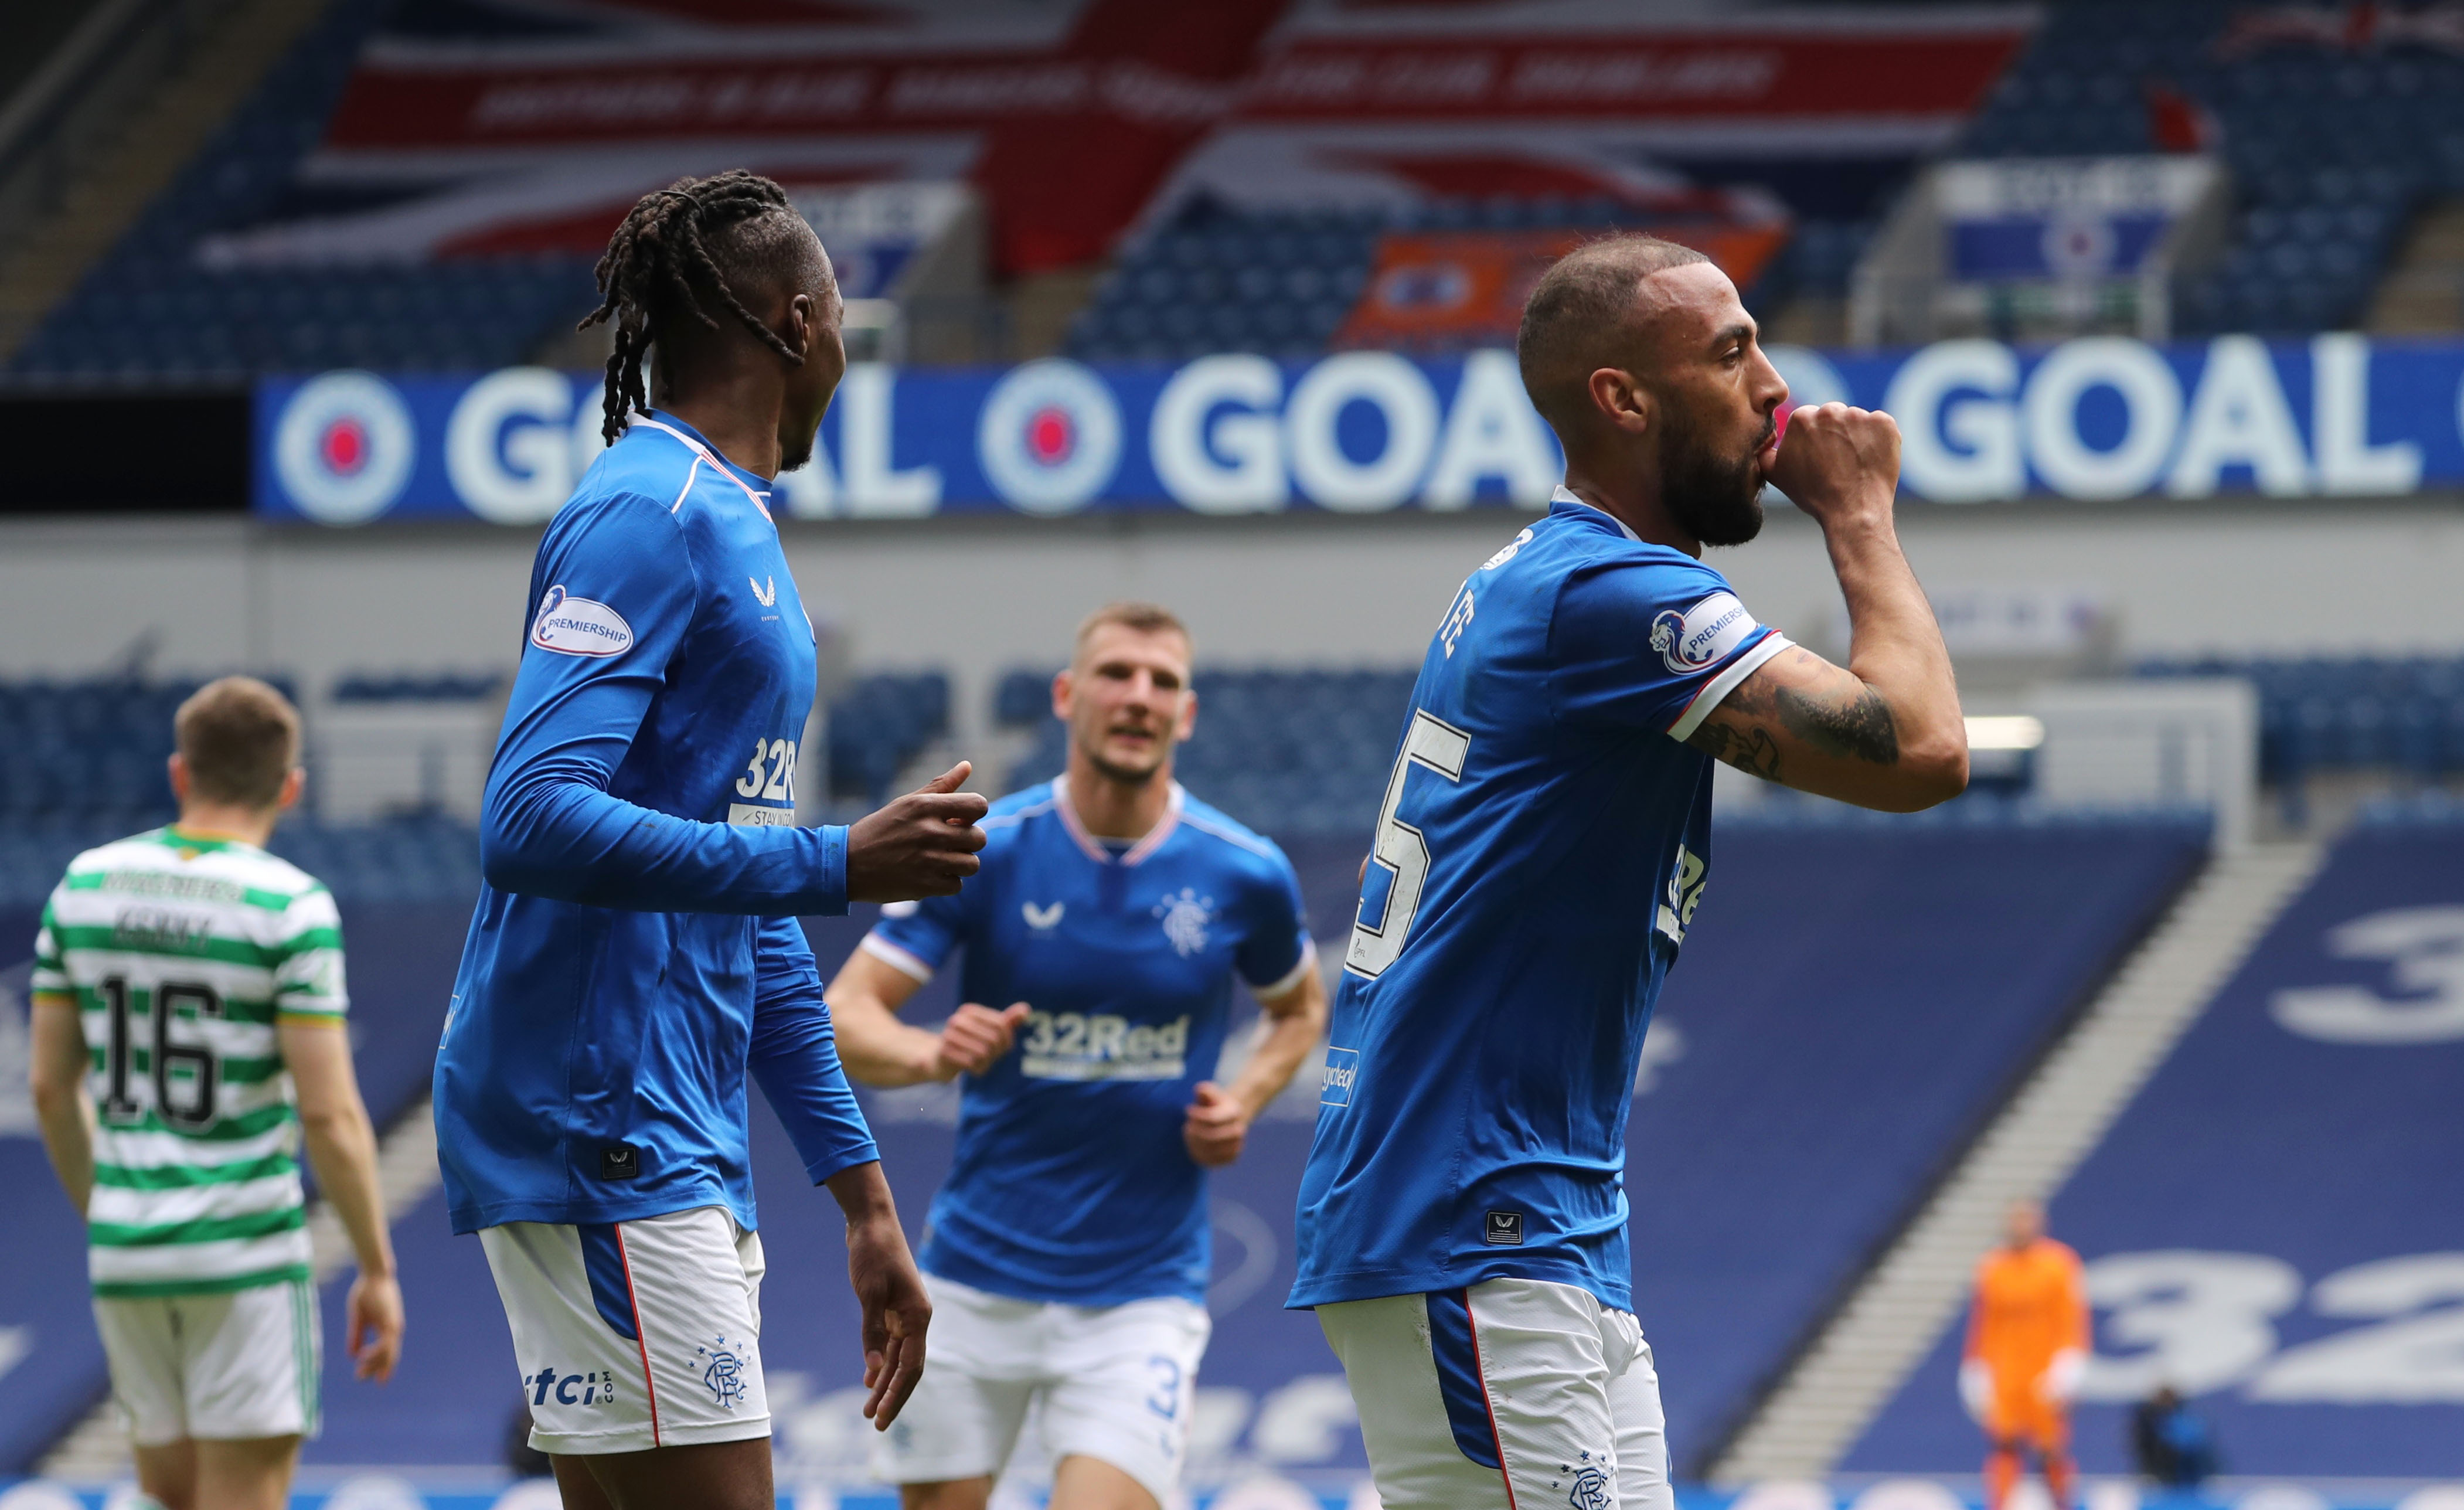 VIDEO: Glasgow ostáva modrý, Rangers hladko zdolali Celtic a naďalej sú  nezdolaní